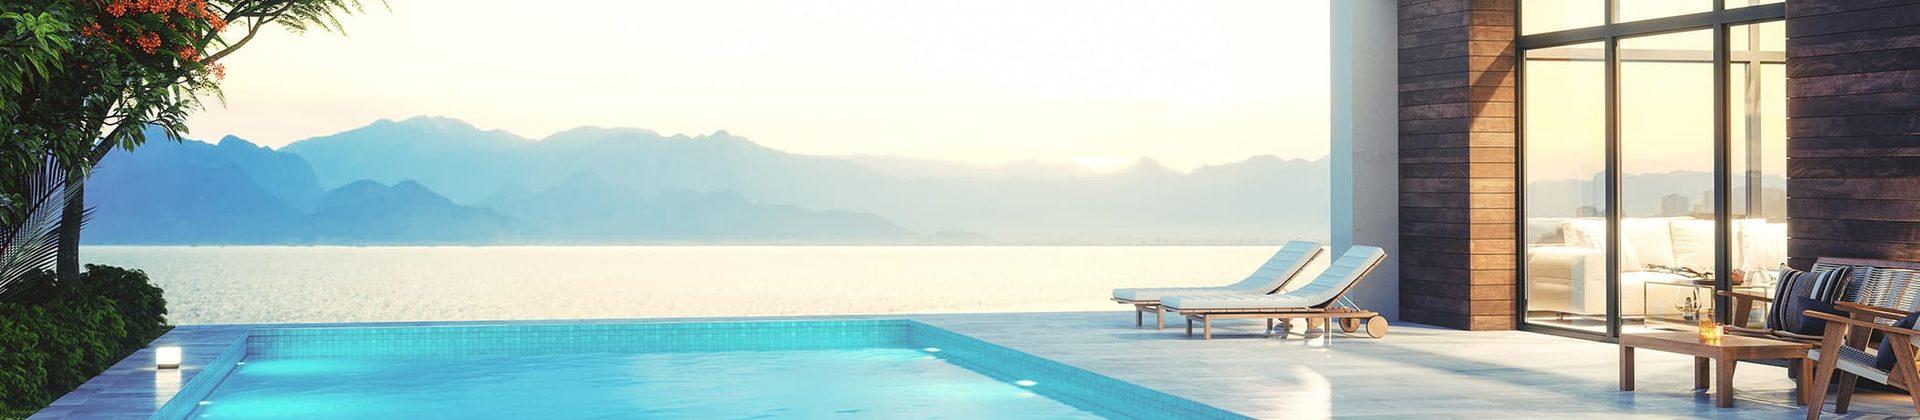 Ferienhaus mit Pool an der italienischen Adria - TUI